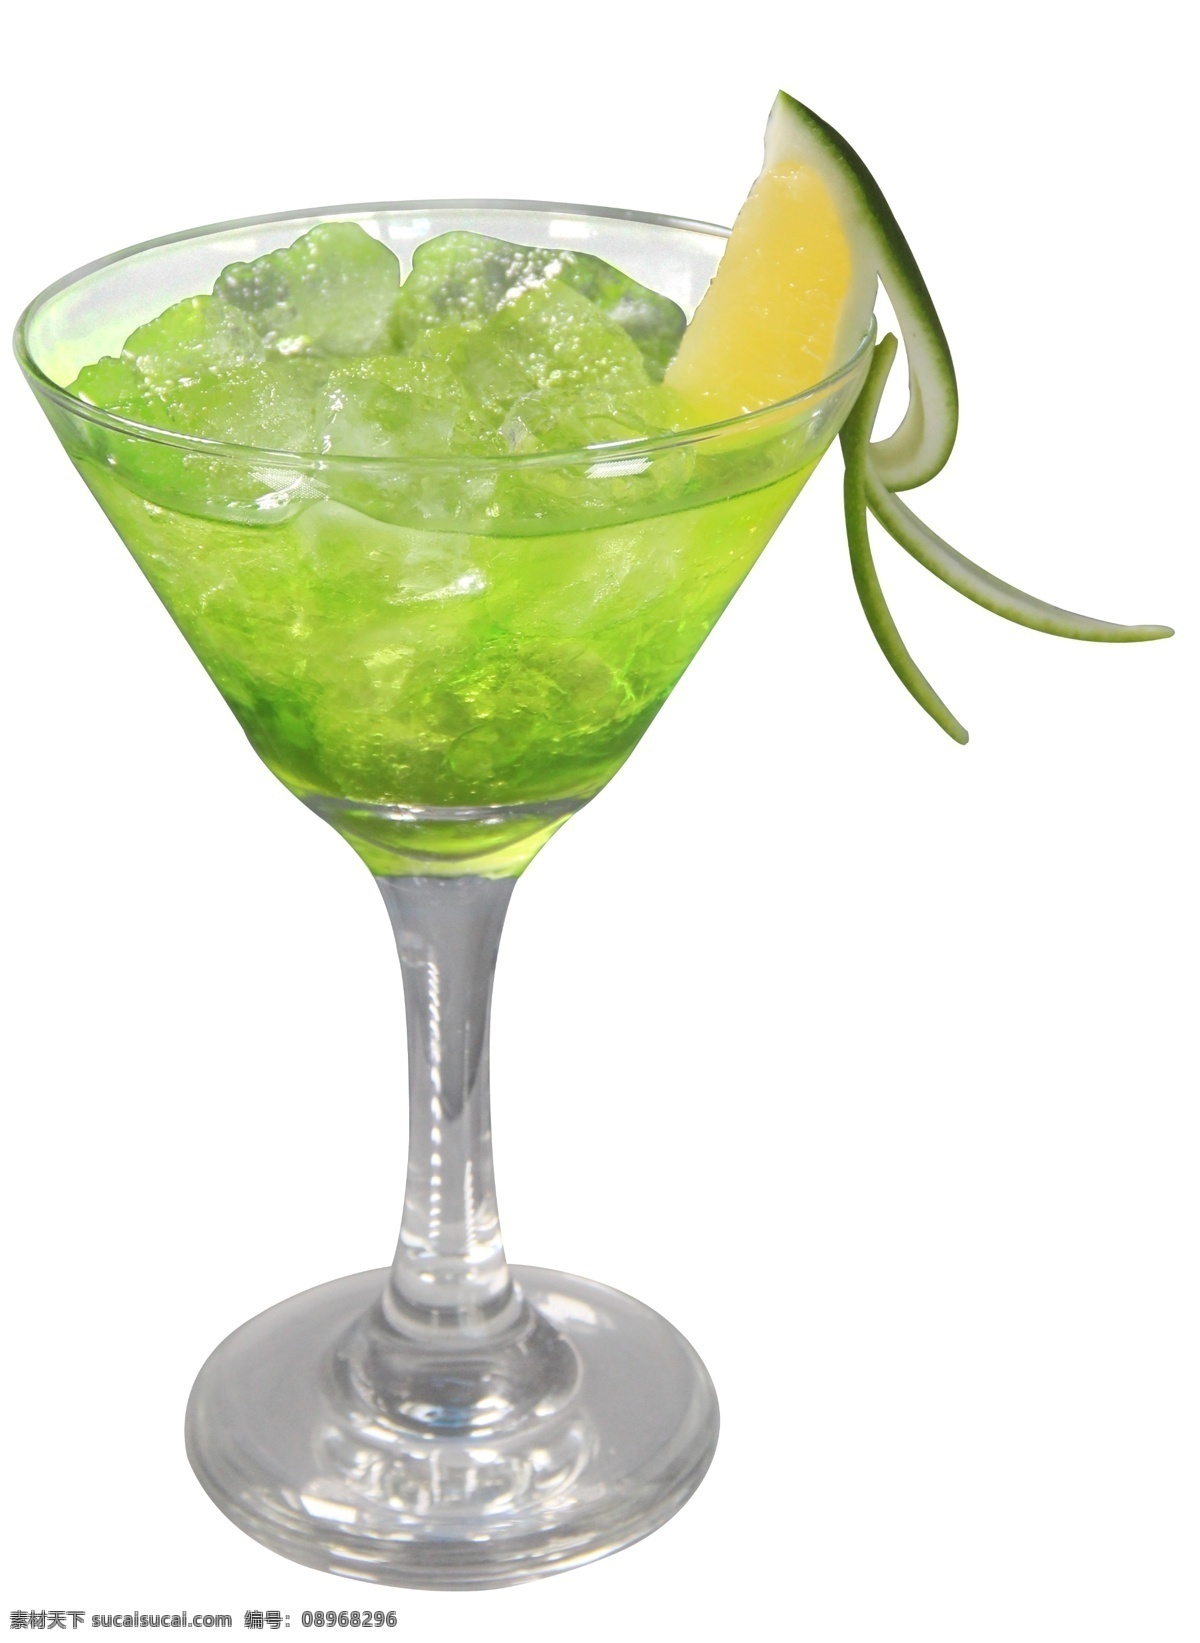 莫吉托鸡尾酒 莫吉托 鸡尾酒 预调酒 绿色森林 绿色宝石 柠檬 水果饮品 酒吧 西餐厅 饮品设计 分层